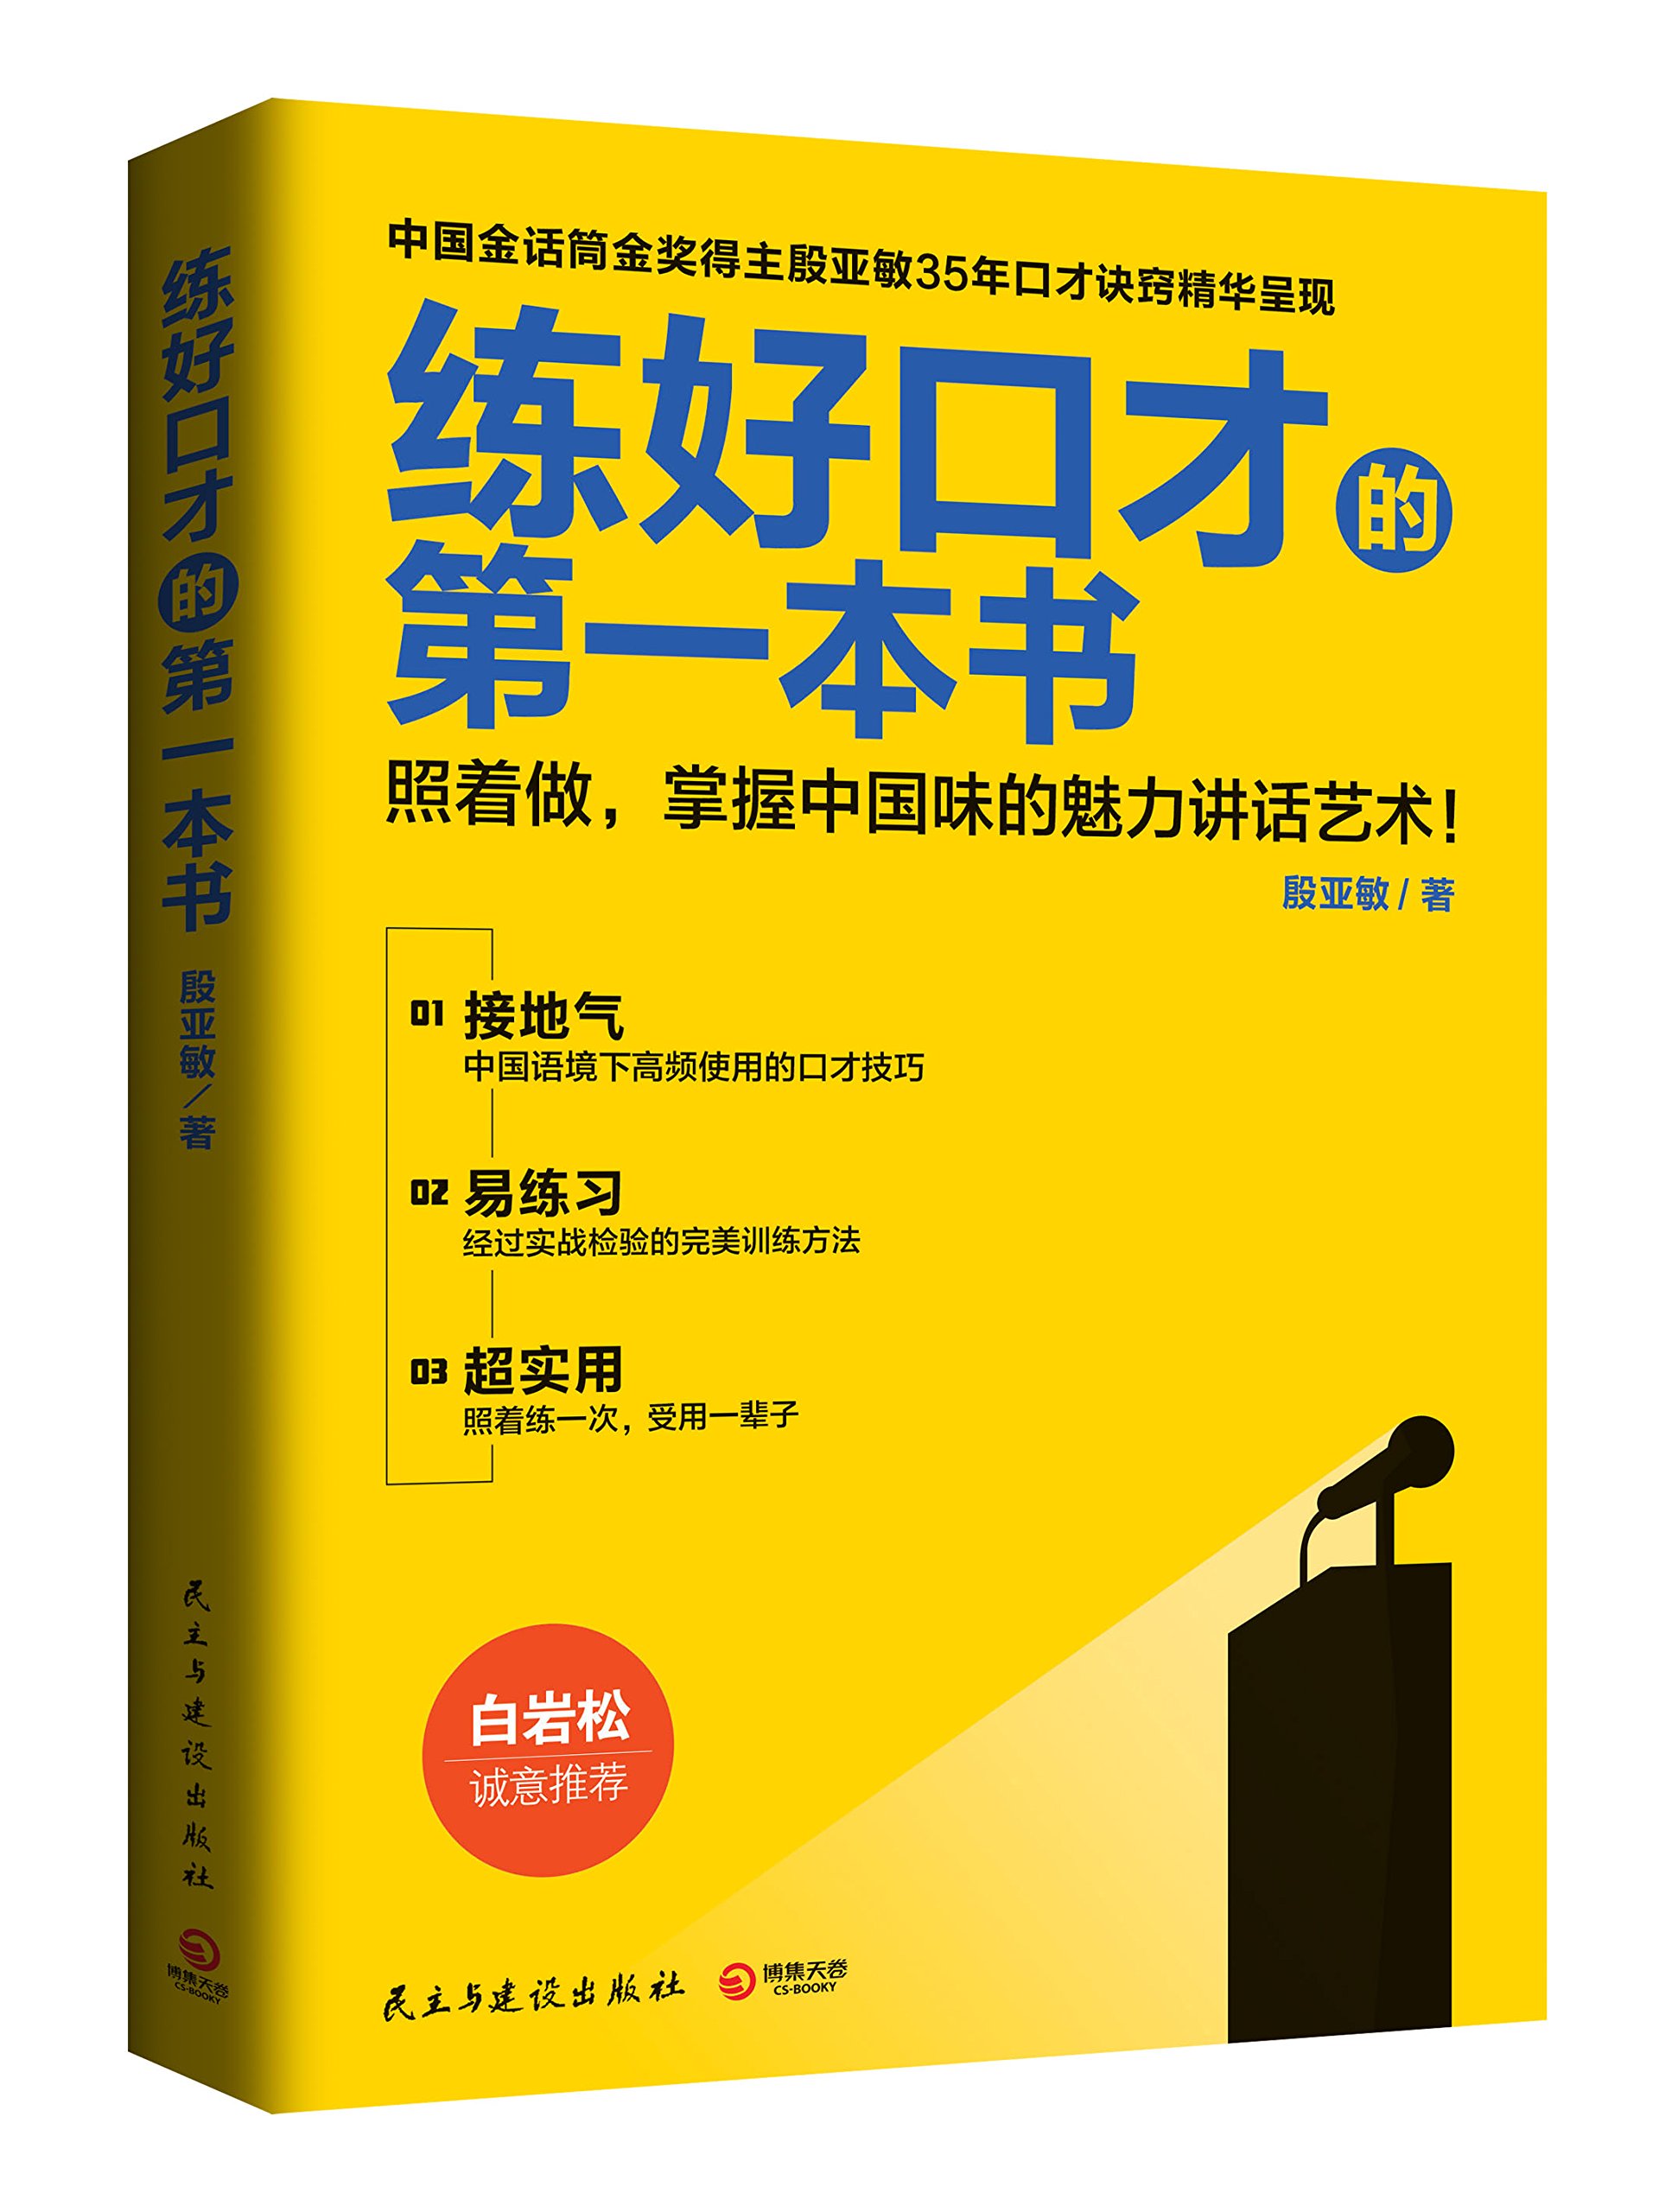 練好口才的第一本書：照著做，掌握中國味的魅力講話藝術！